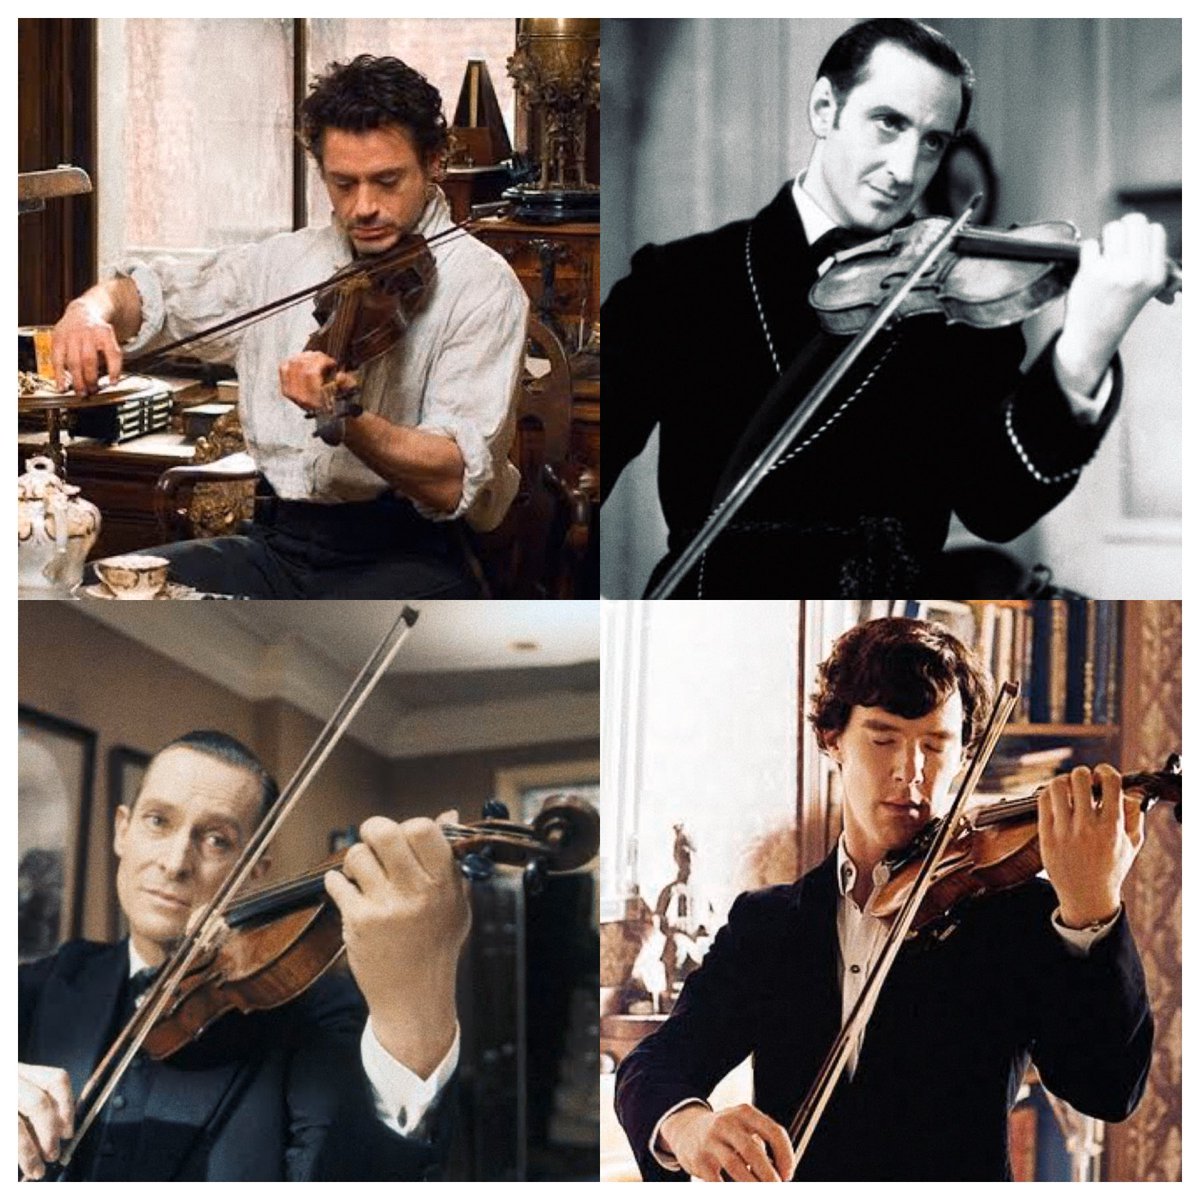 今日はバイオリンの日ですって!??
実質推しの日ですね!ありがとうございます!
#ホムの日常 